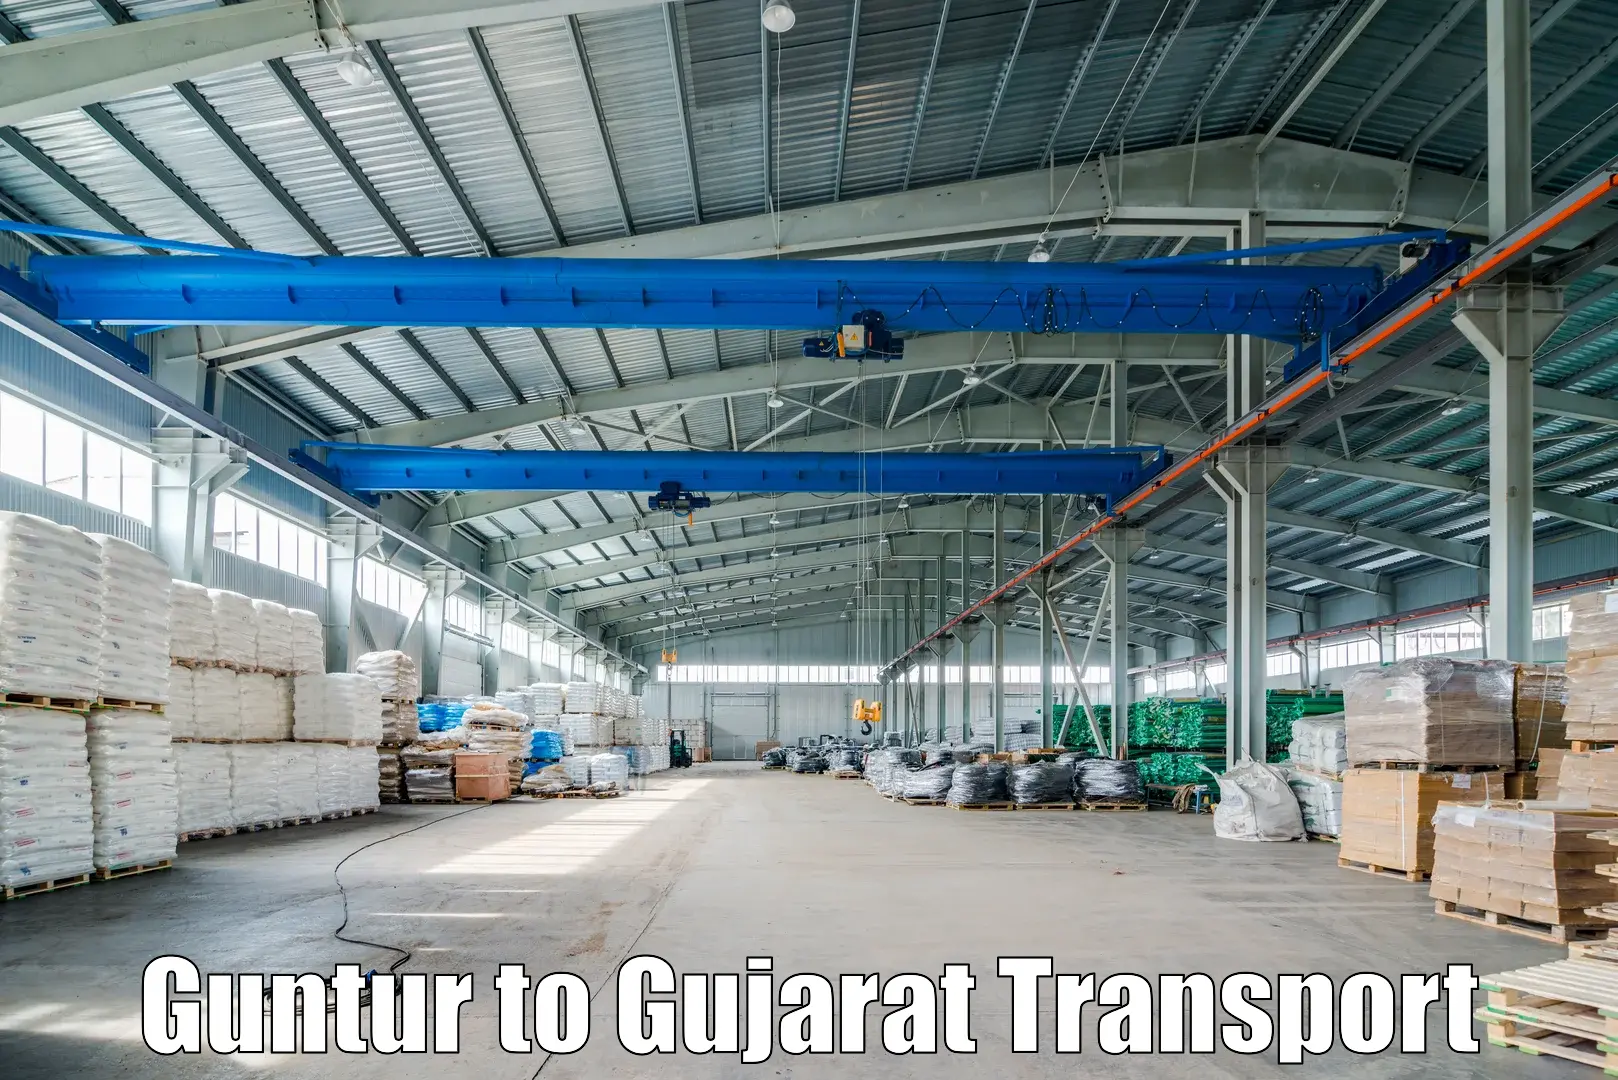 International cargo transportation services Guntur to Navsari